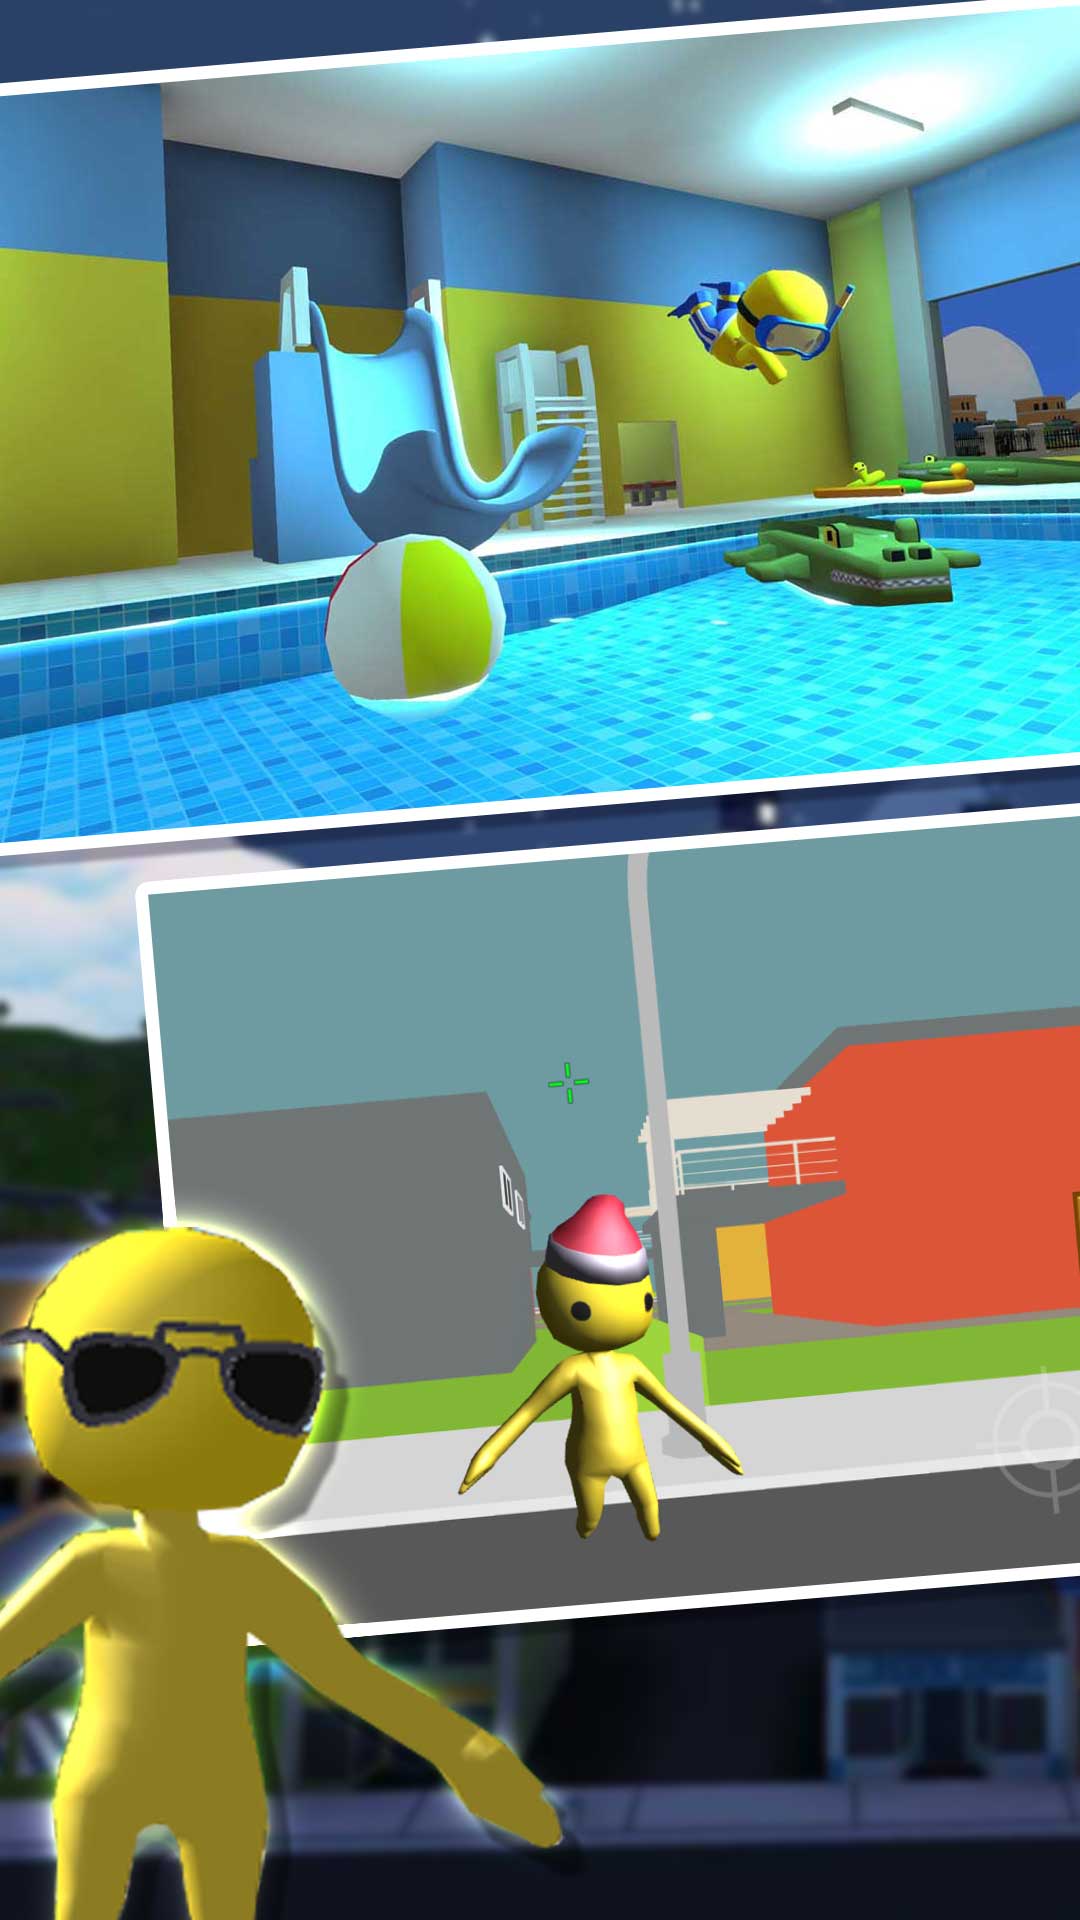 小黄人模拟器游戏安卓版安卓版下载-小黄人模拟器游戏安卓版手游下载